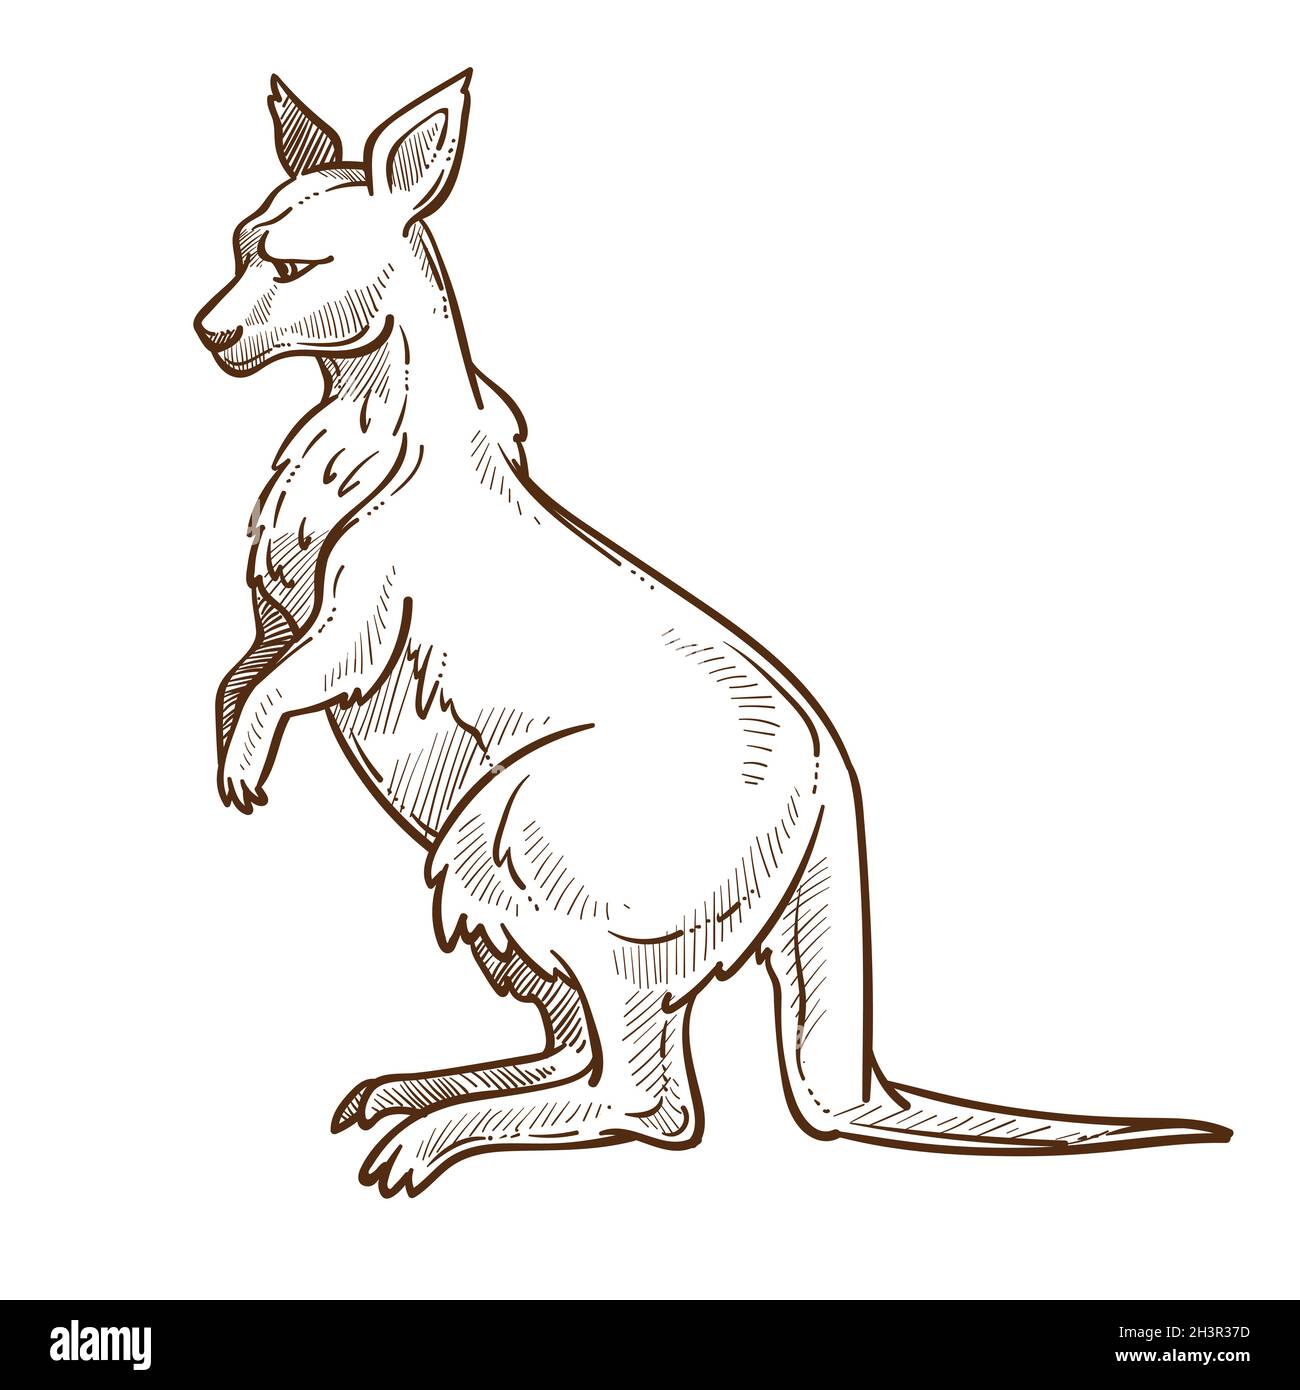 Dibujo aislado de canguro o wallaby, animal australiano con bolsa Ilustración del Vector